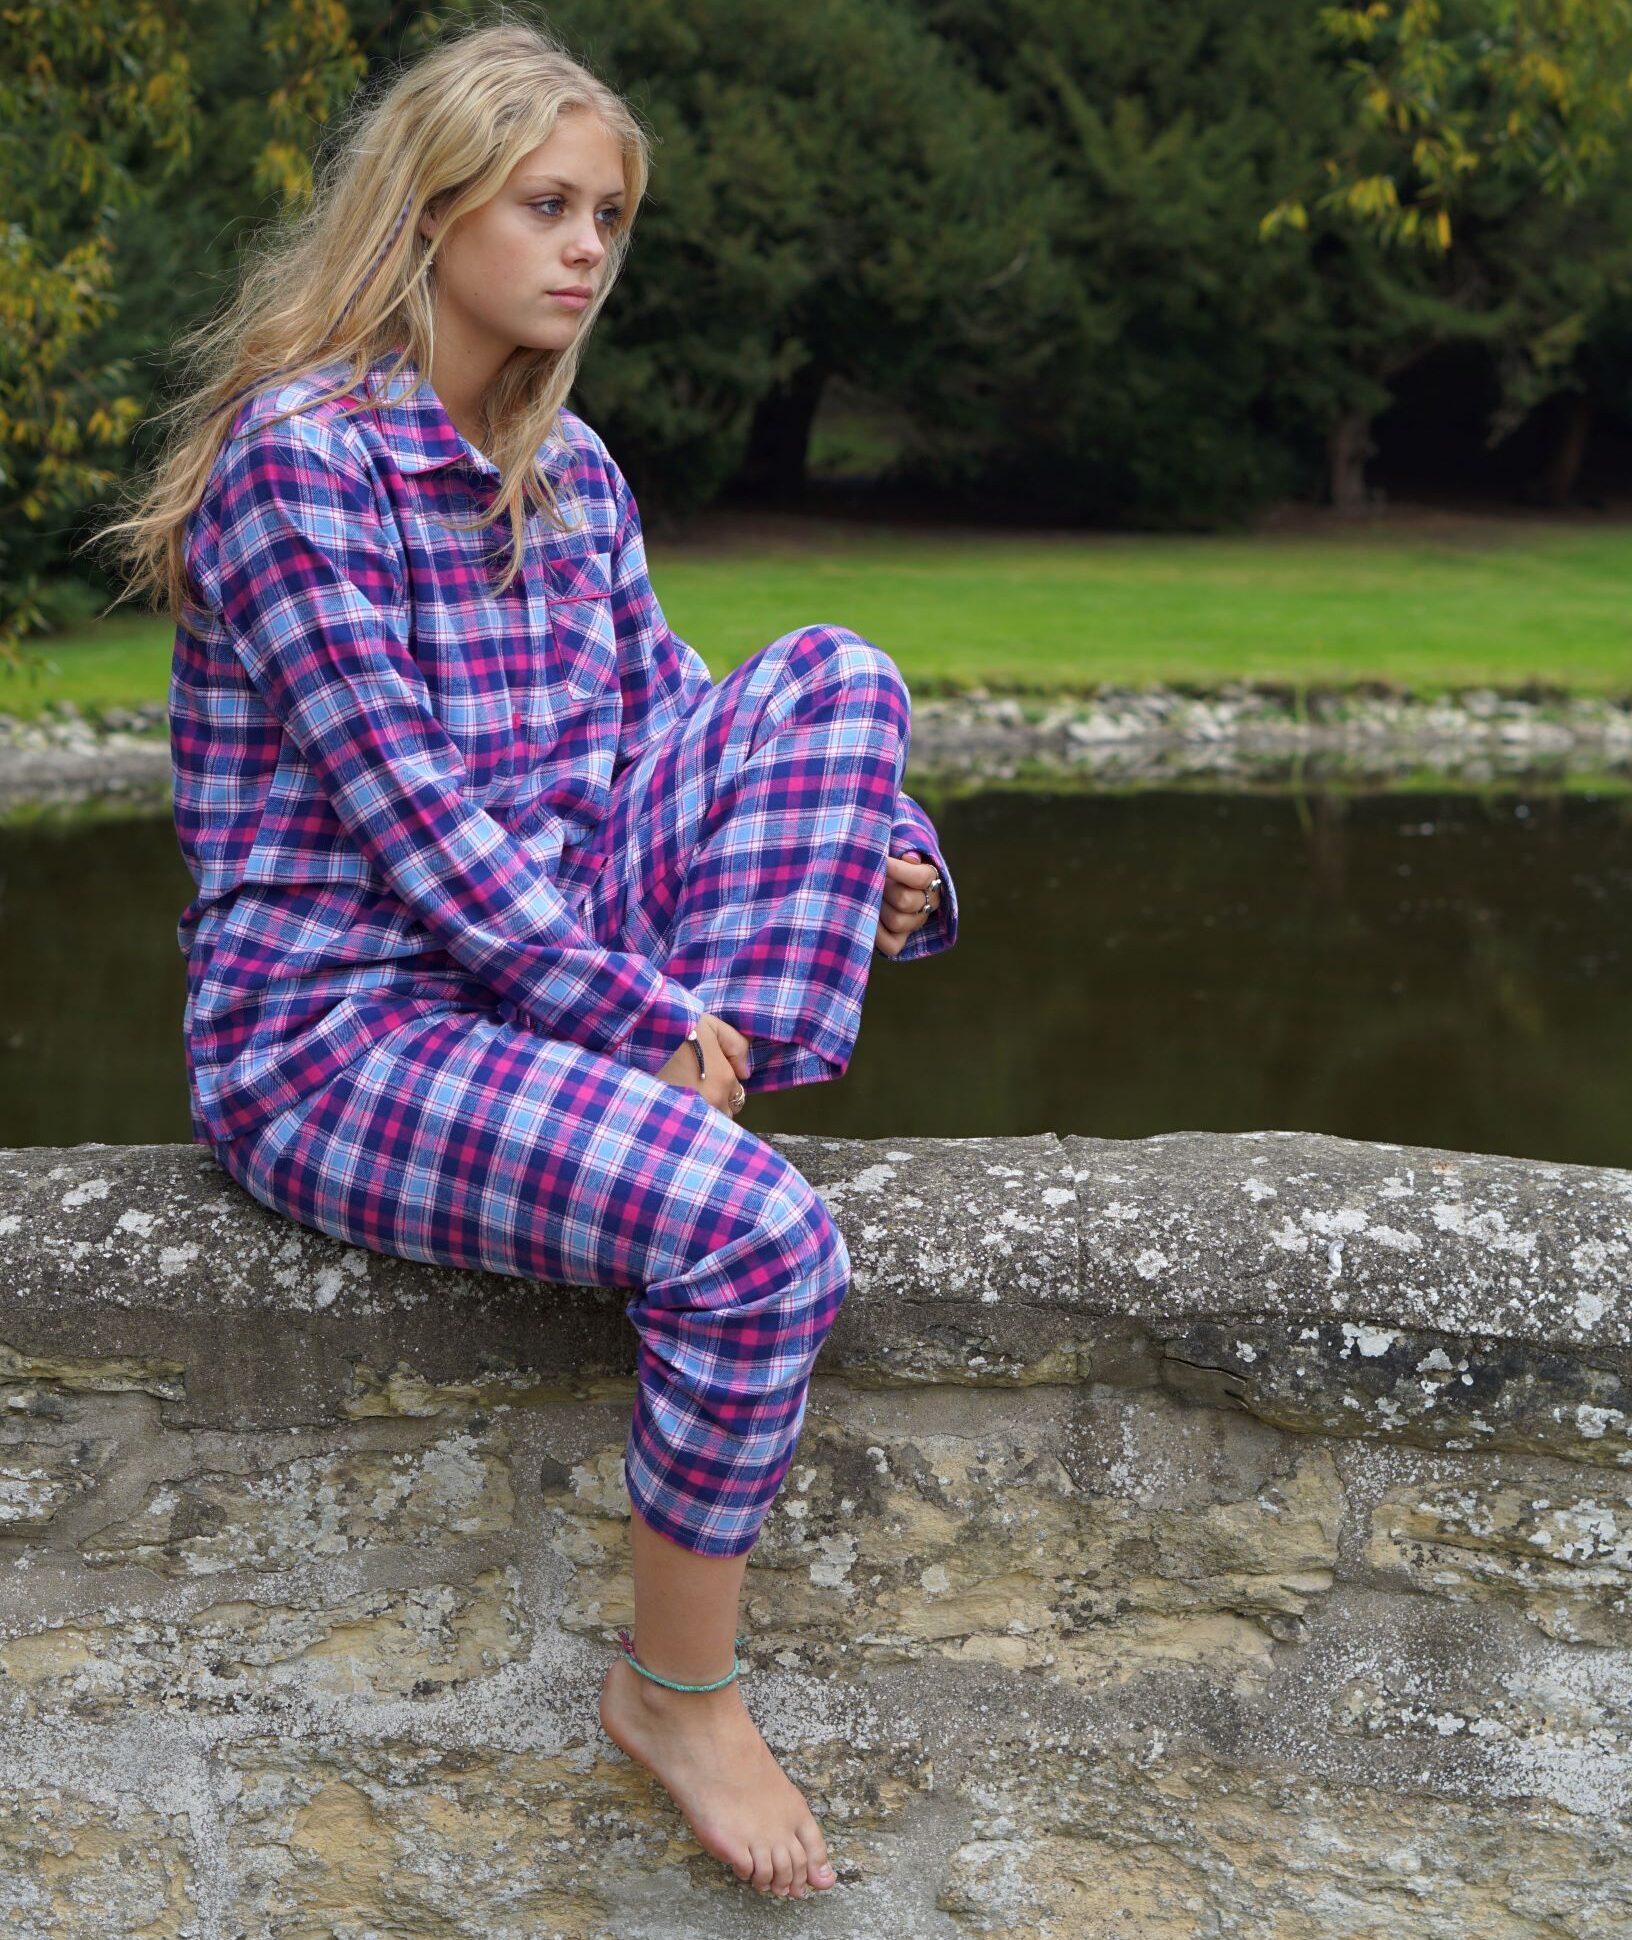 Landschap Kaarsen Temmen Ladies Pyjamas in Brushed Cotton Pink and Navy Check - The Pyjama House